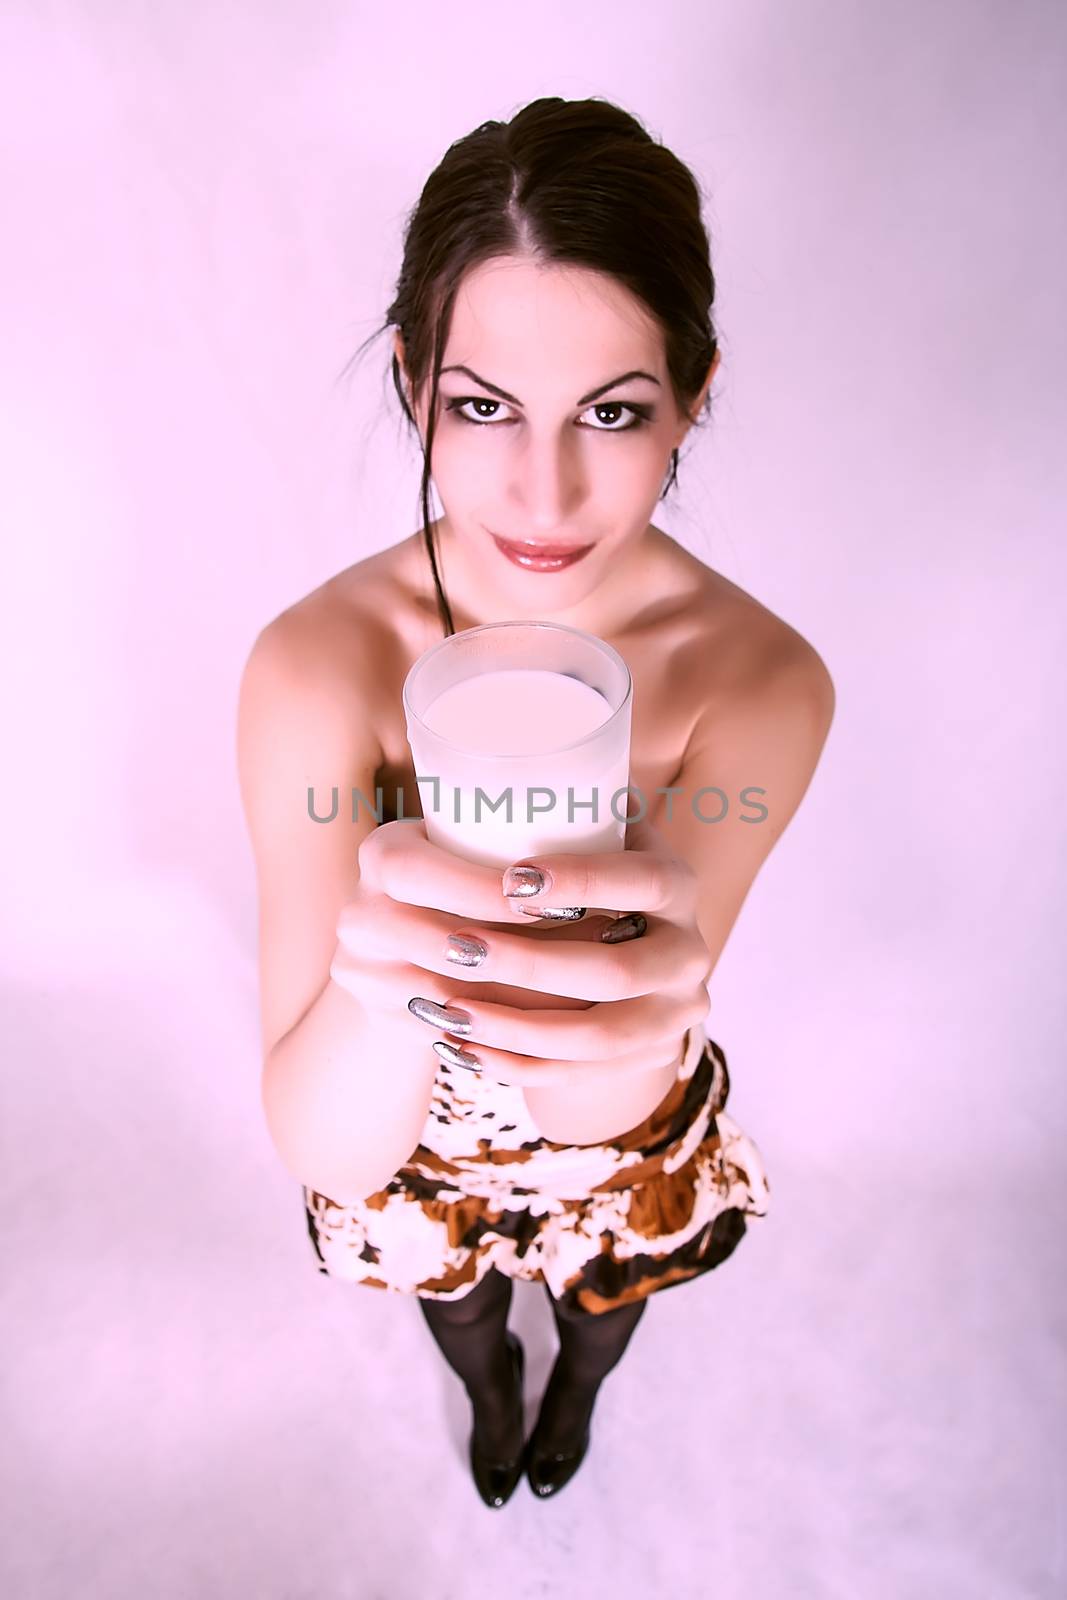 Happy and smiling beautiful young woman enjoying a glass milk by dukibu